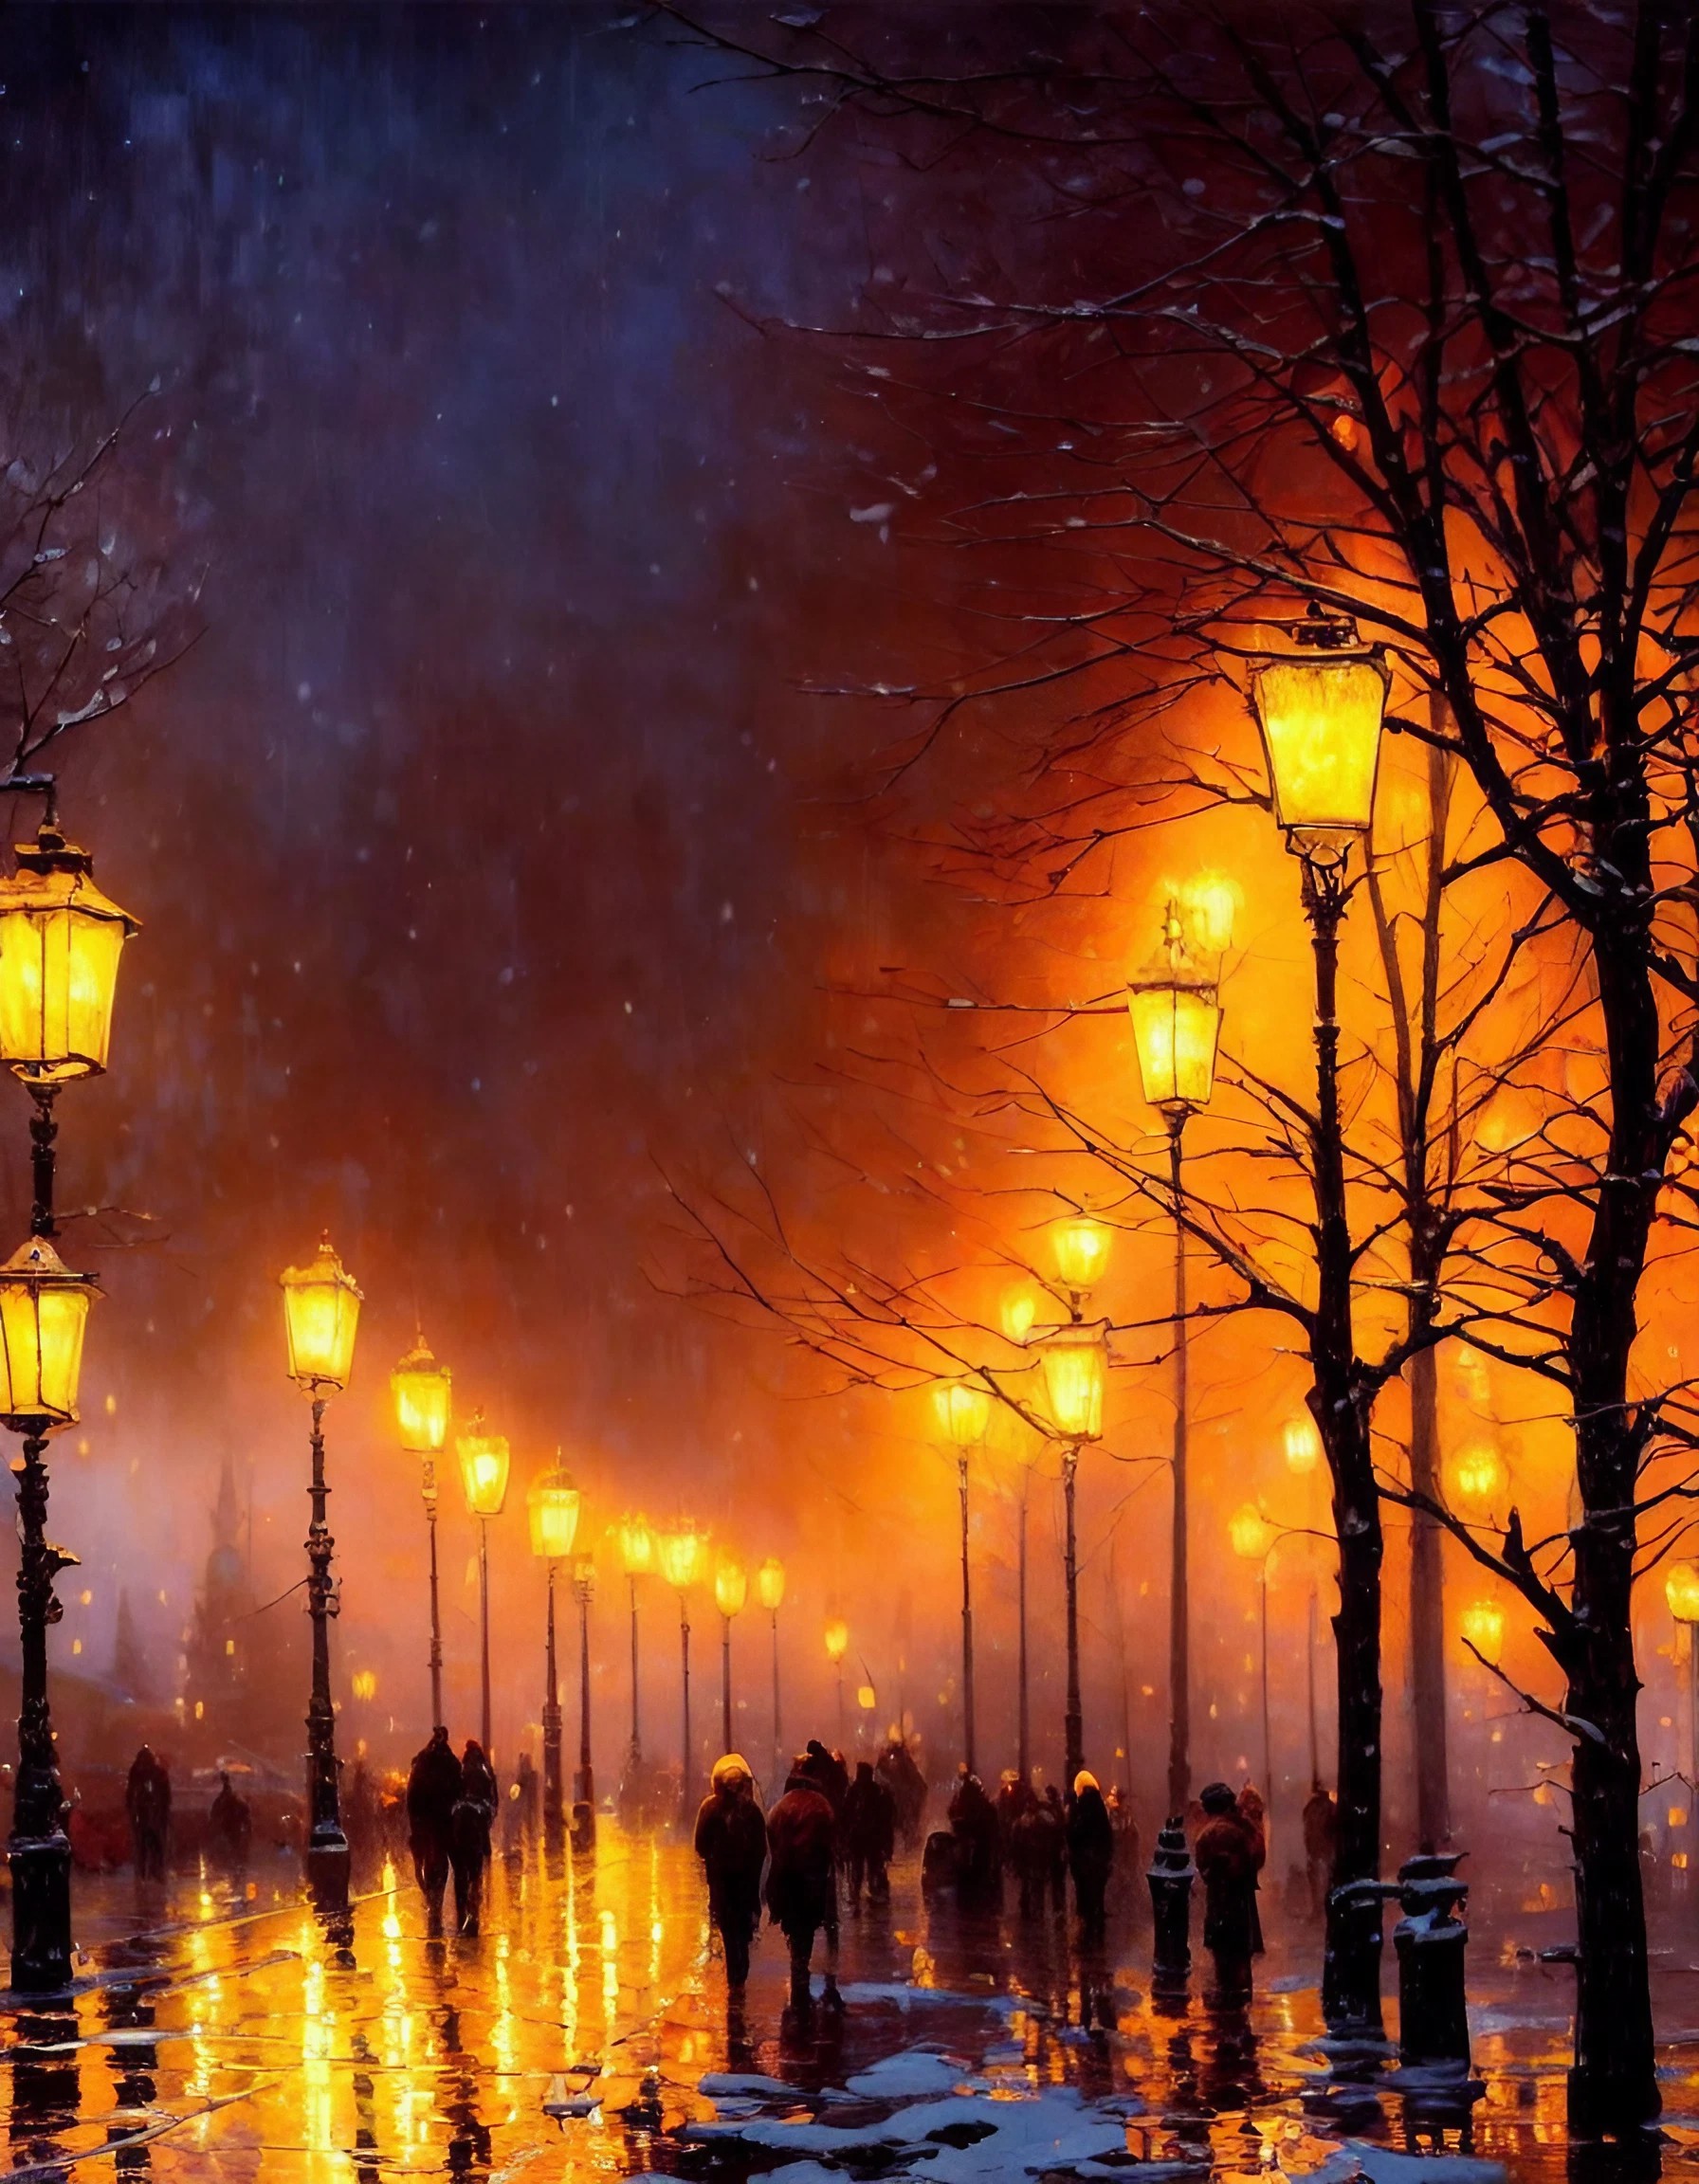 冬の雪の降るヨーロッパの街路樹と街灯ときれいな夜空